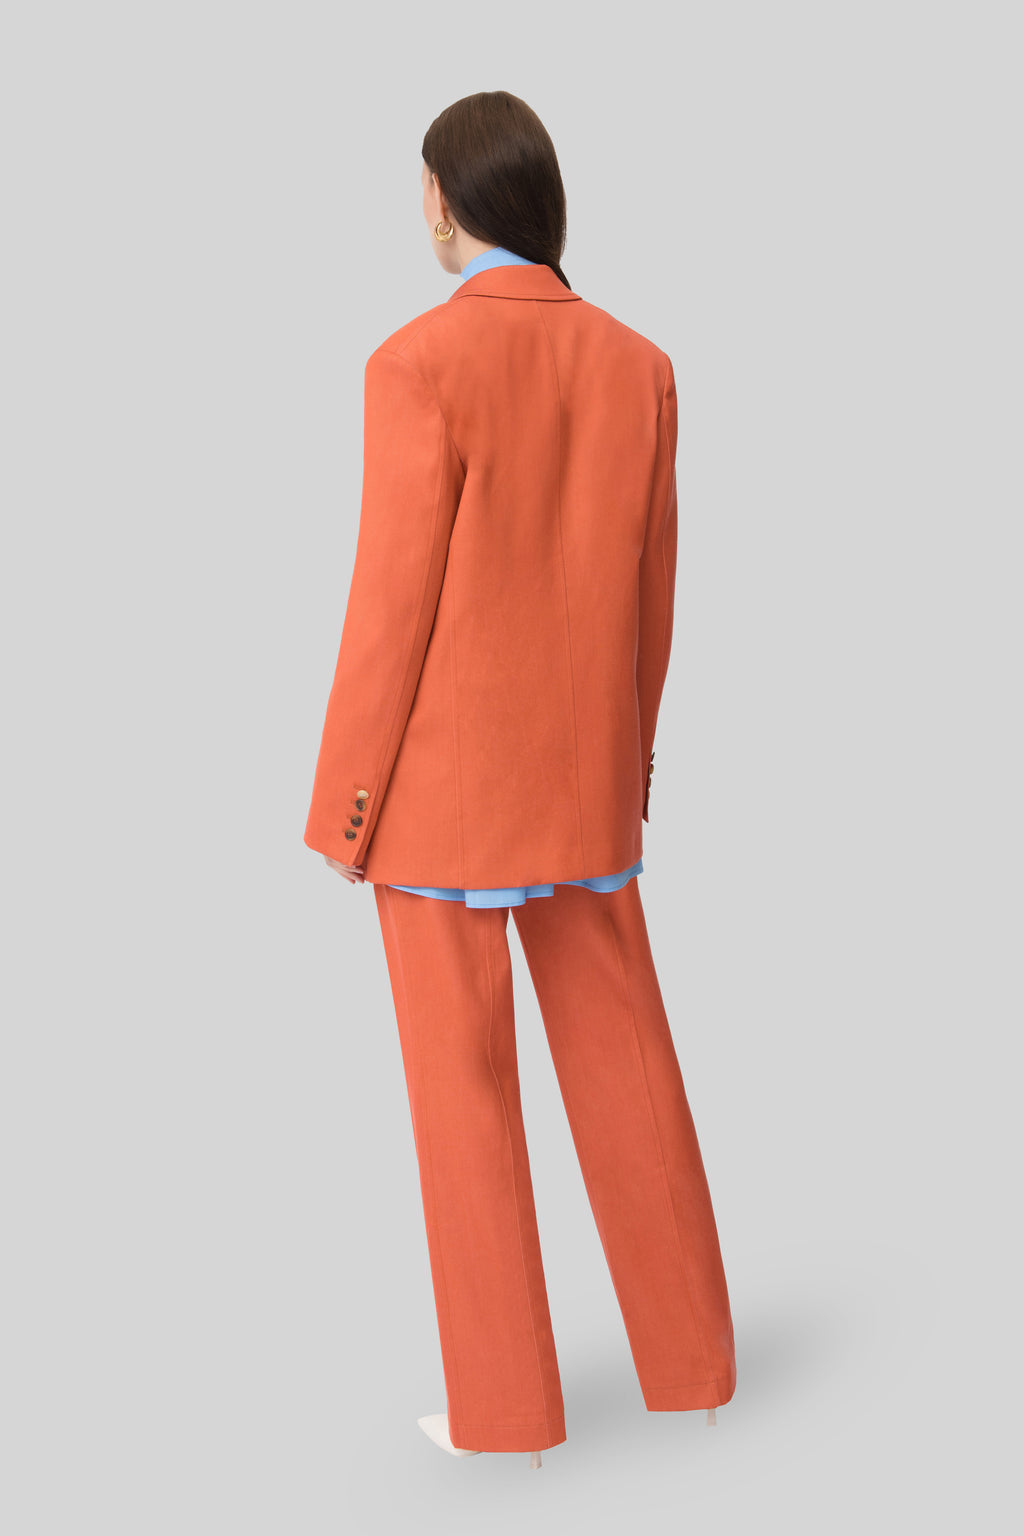 The Orange Wool Denim Lover Blazer